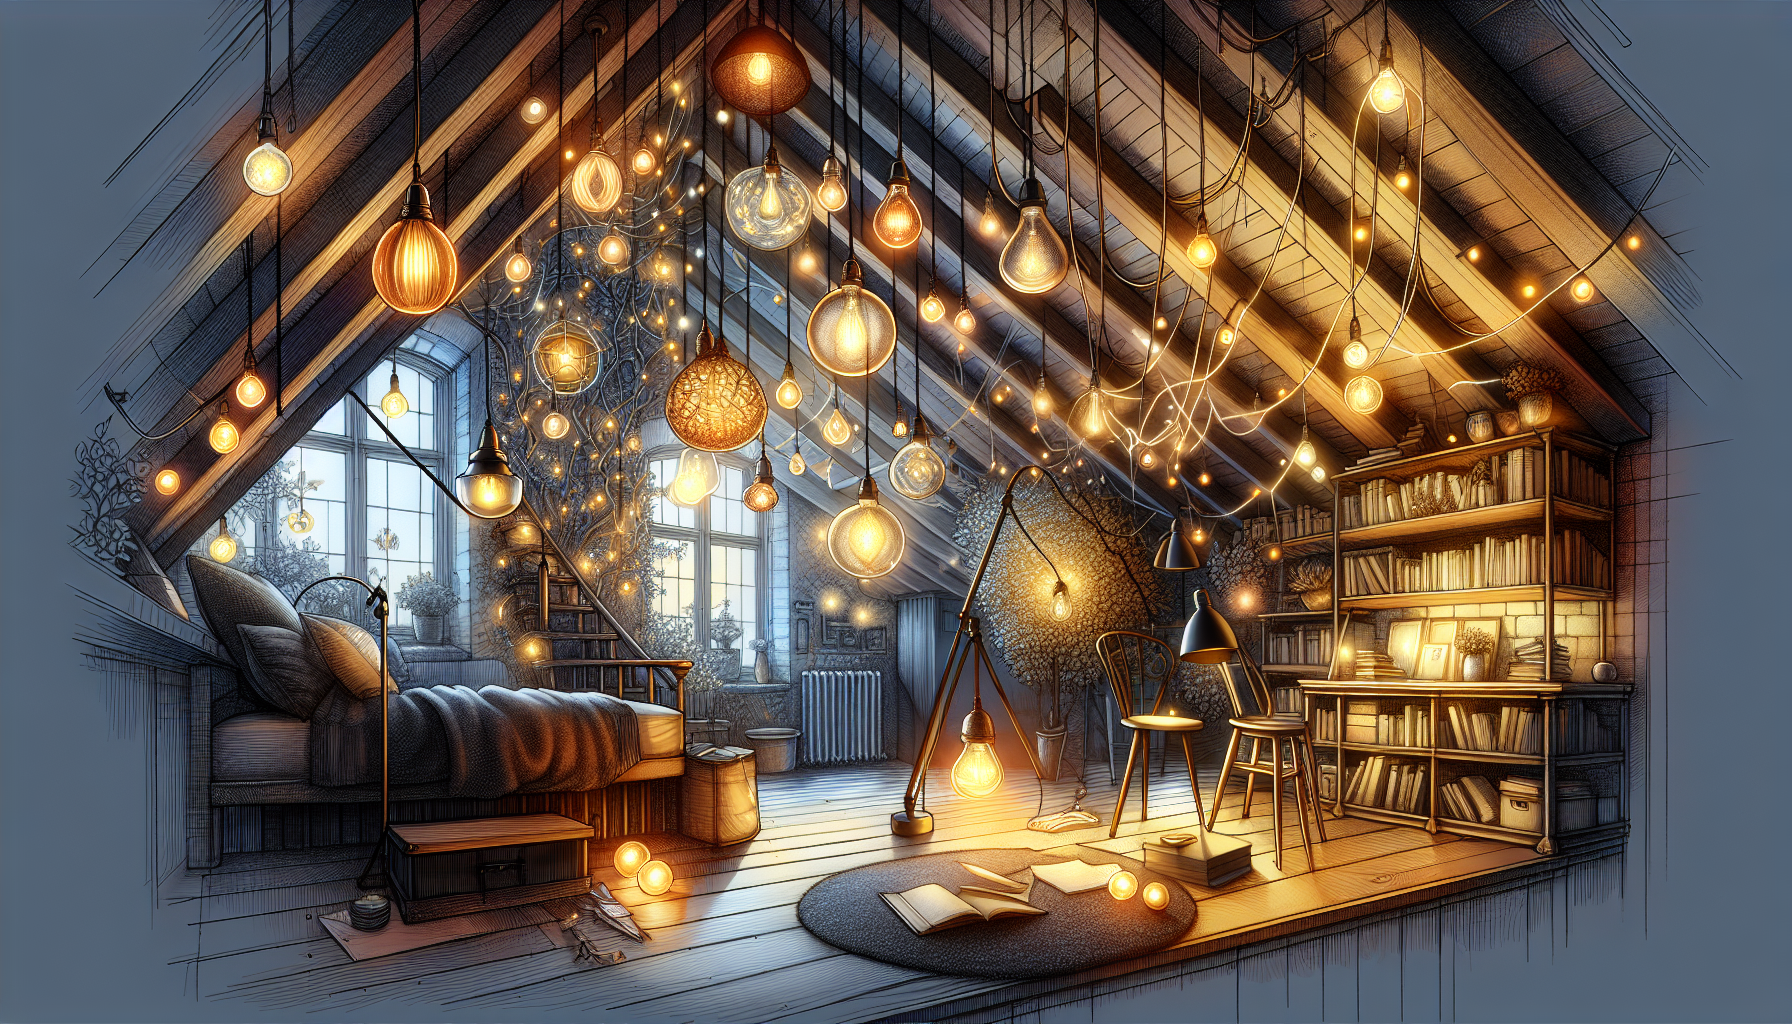 Lichtkonzepte für Dachwohnungen: Illustration von verschiedenen Beleuchtungsideen für das Dachgeschoss